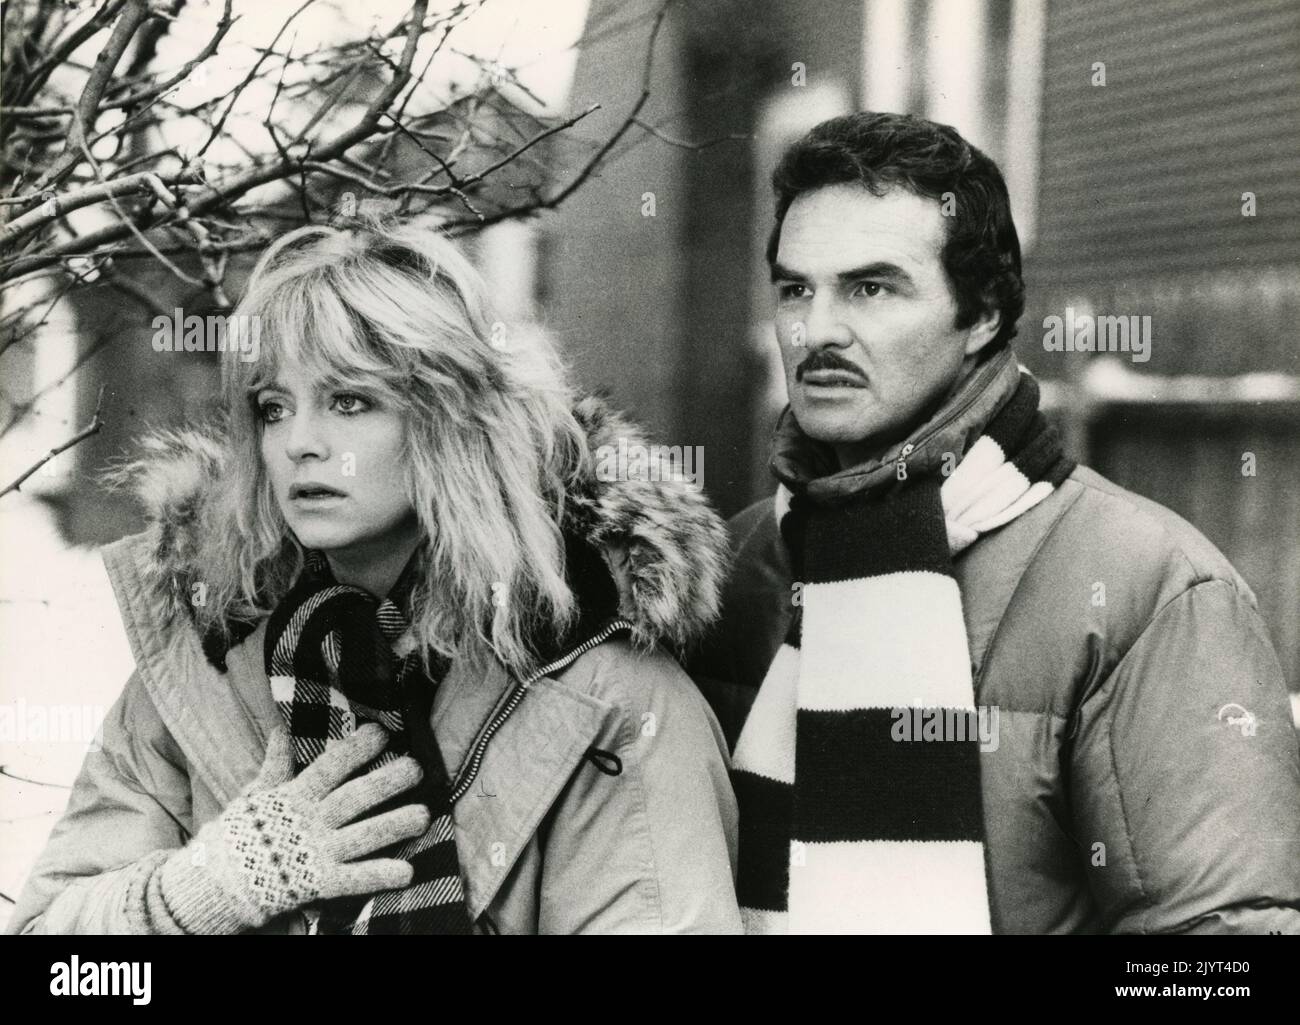 La actriz estadounidense Goldie Hawn y el actor Burt Reynolds en la película Best Friends, USA 1982 Foto de stock